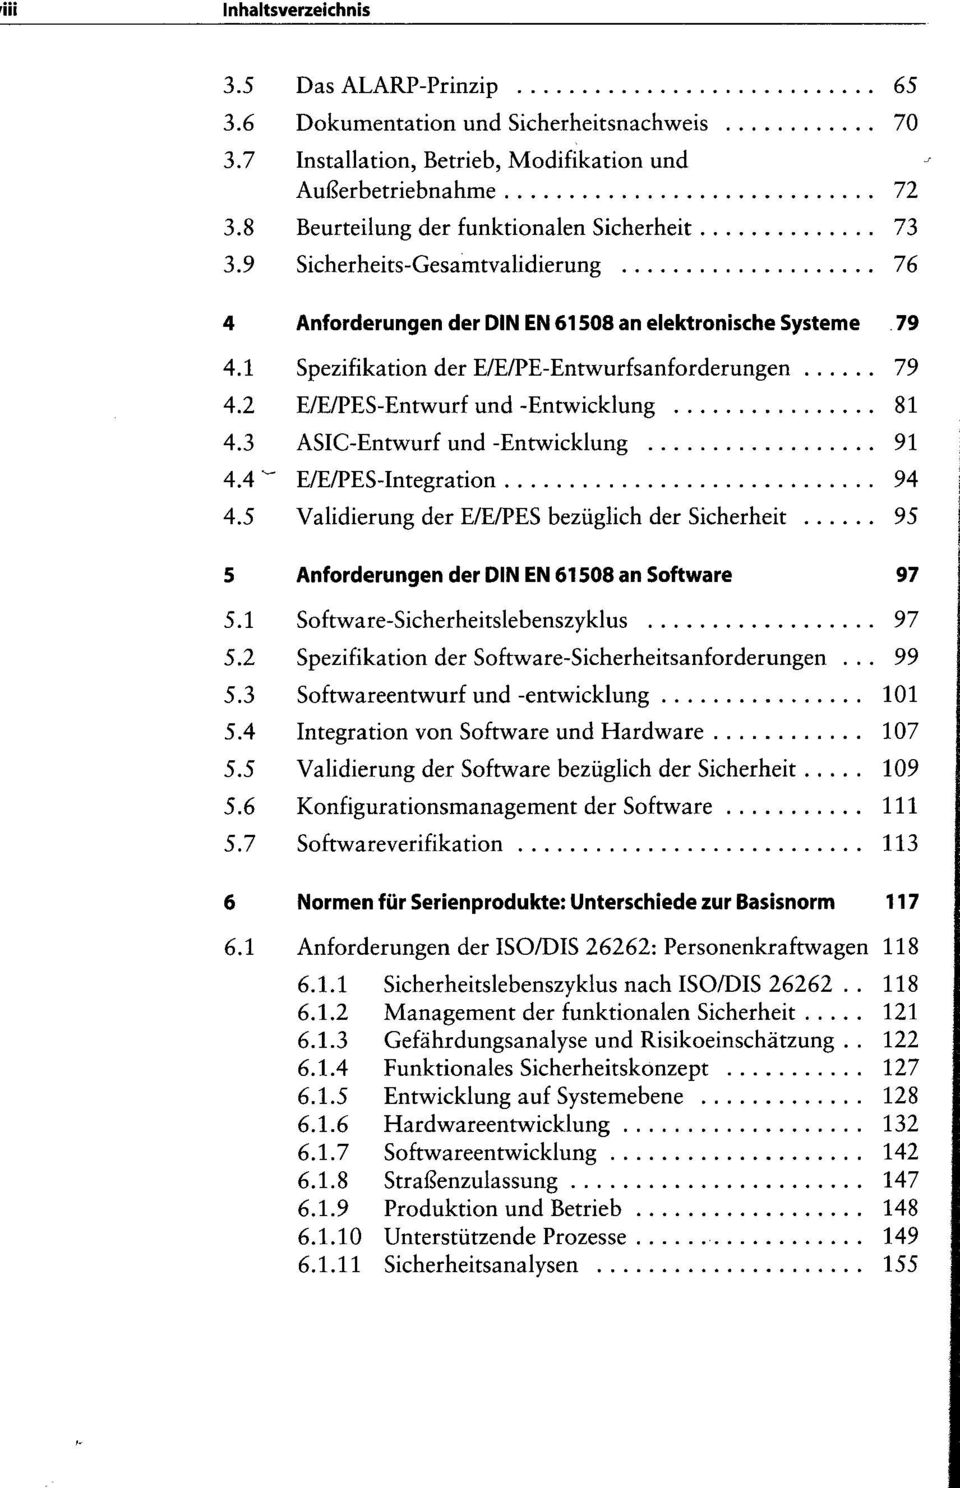 2 E/E/PES-Entwurf und -Entwicklung 81 4.3 ASIC-Entwurf und -Entwicklung 91 4.4 -" E/E/PES-Integration 94 4.